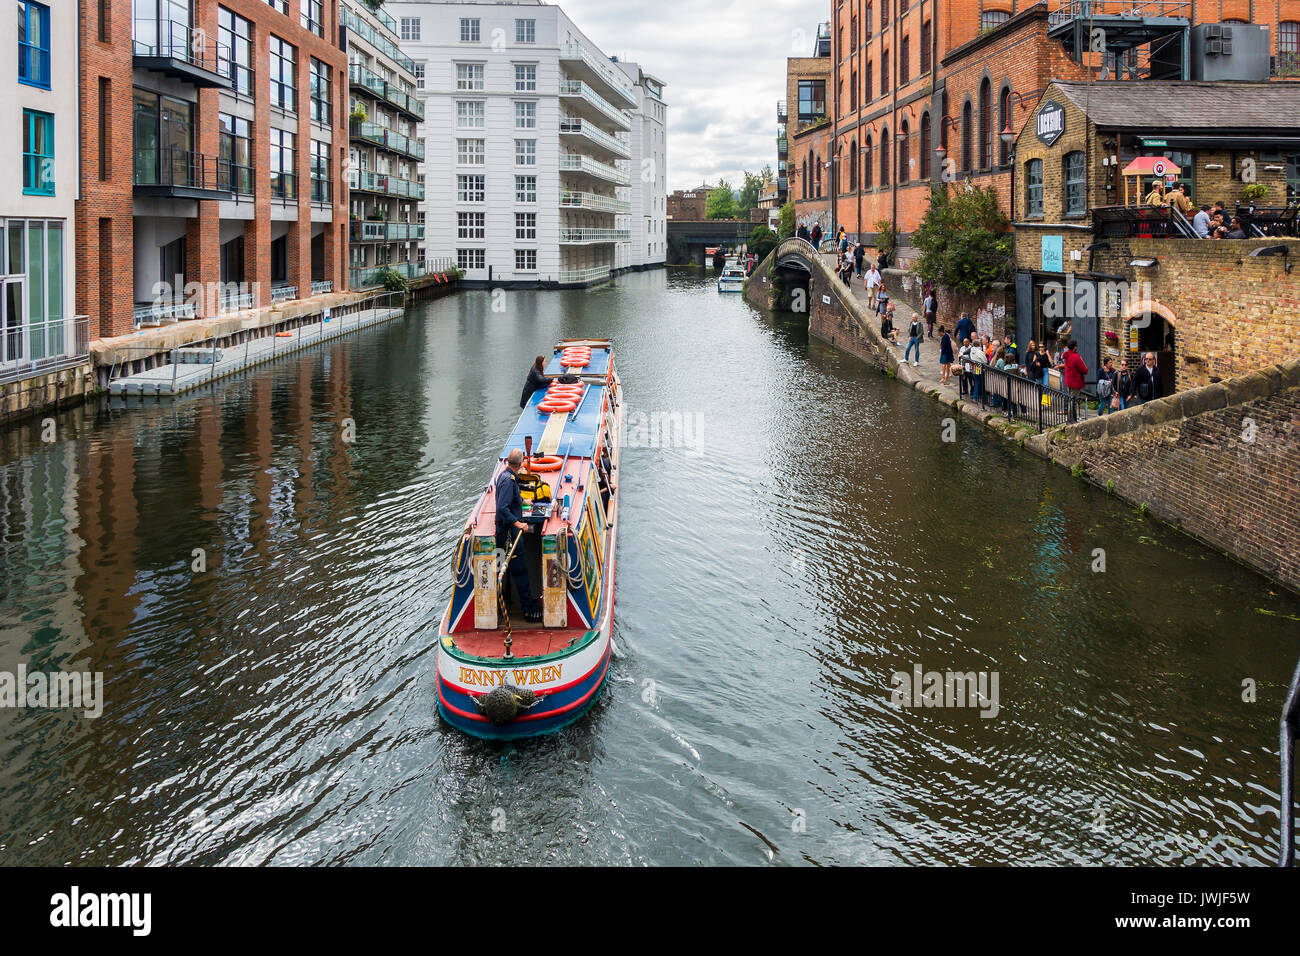 Narrow Boat,Jenny Wren,Regents Canal,Camden,London,England,UK Stock Photo